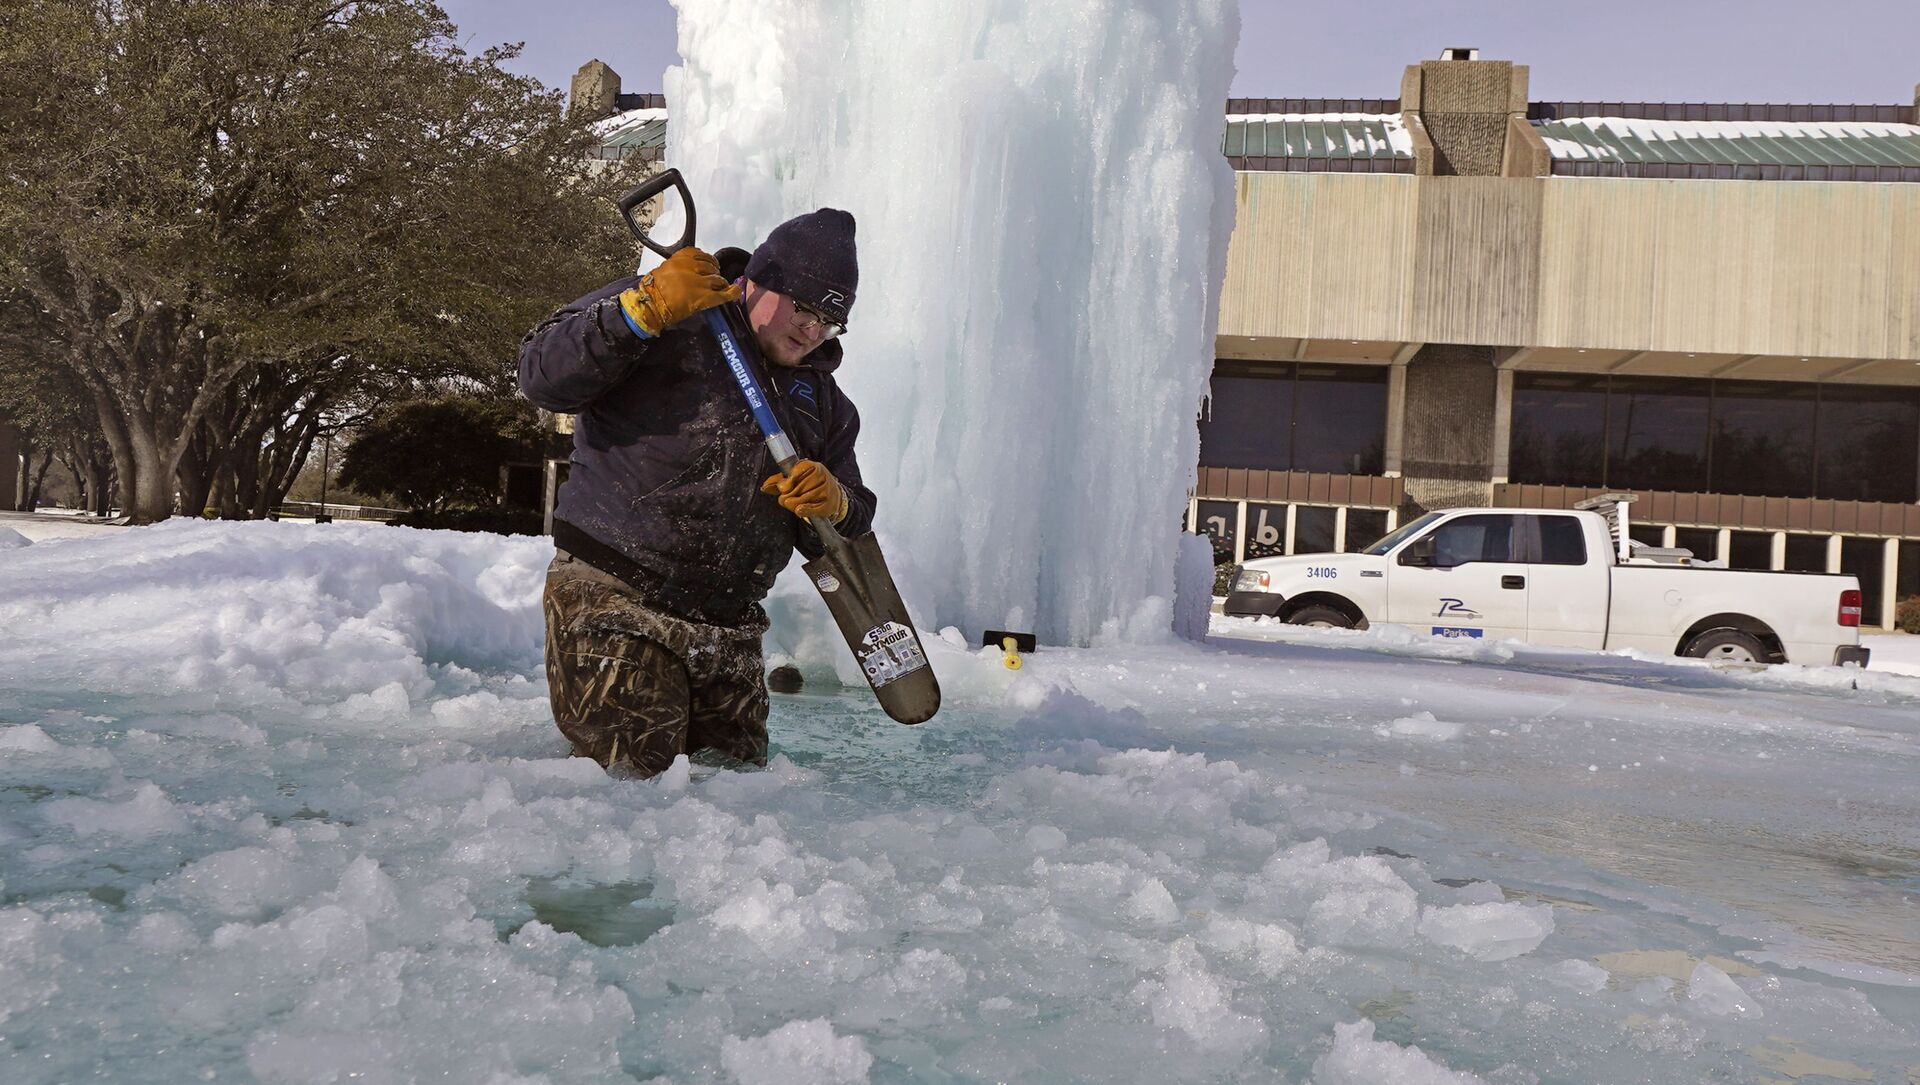 Рабочий ломает лед в замерзшем фонтане в Ричардсоне, штат Техас, США - Sputnik Lietuva, 1920, 23.02.2021